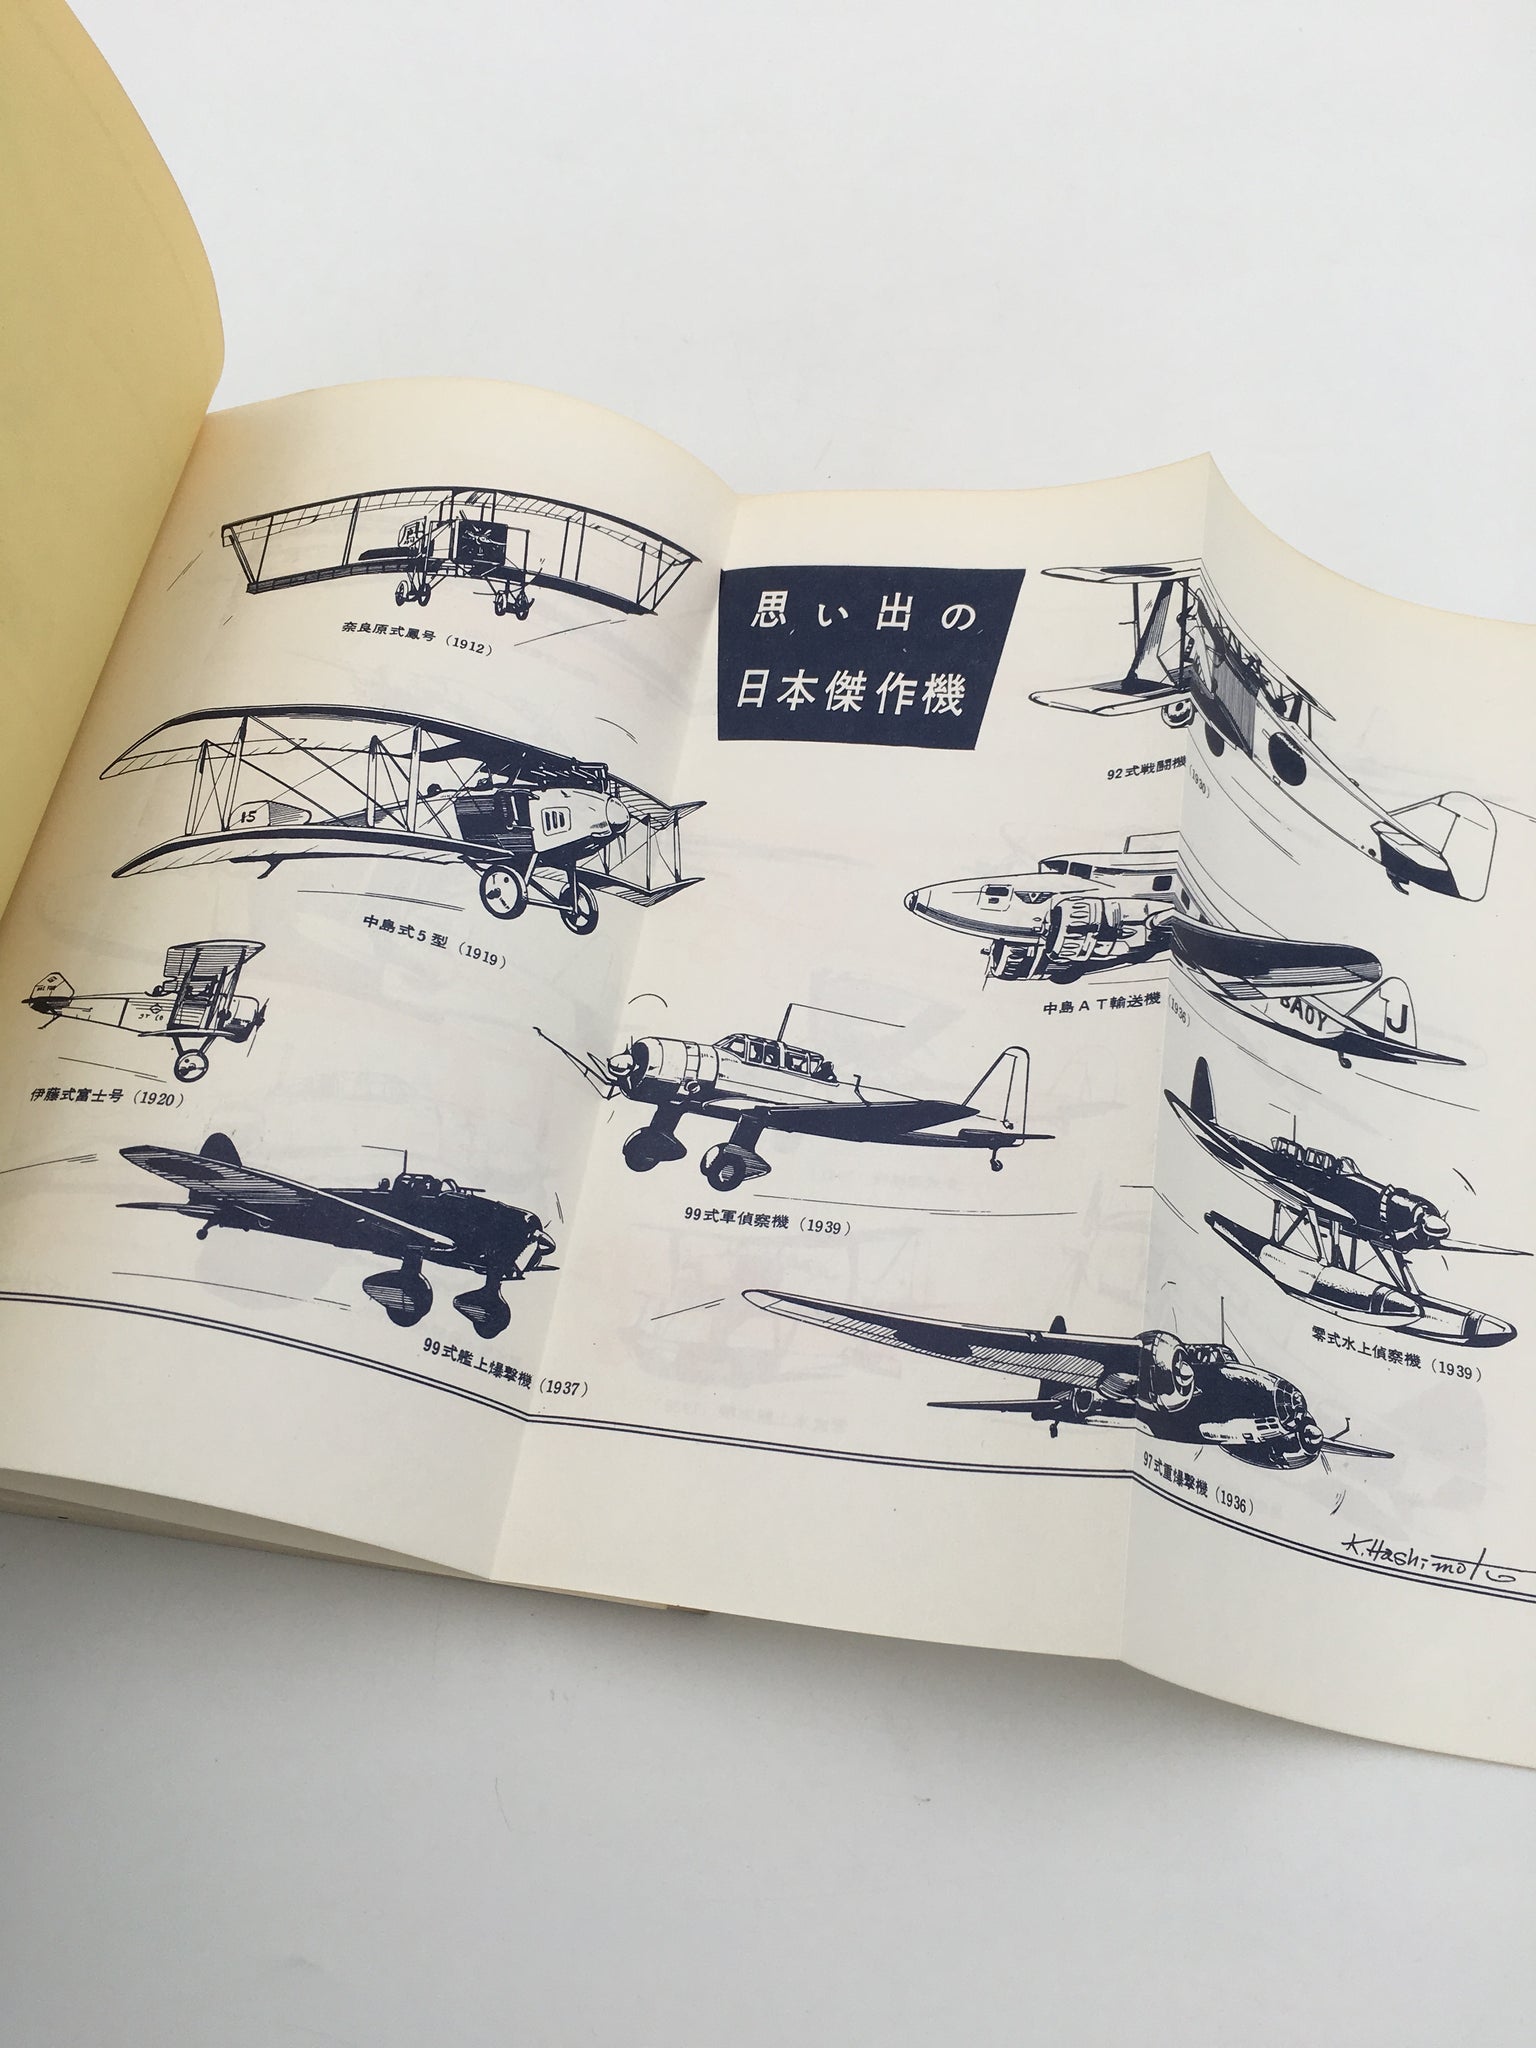 続・日本傑作機物語 ( No. 118 ) – aviation.brussels